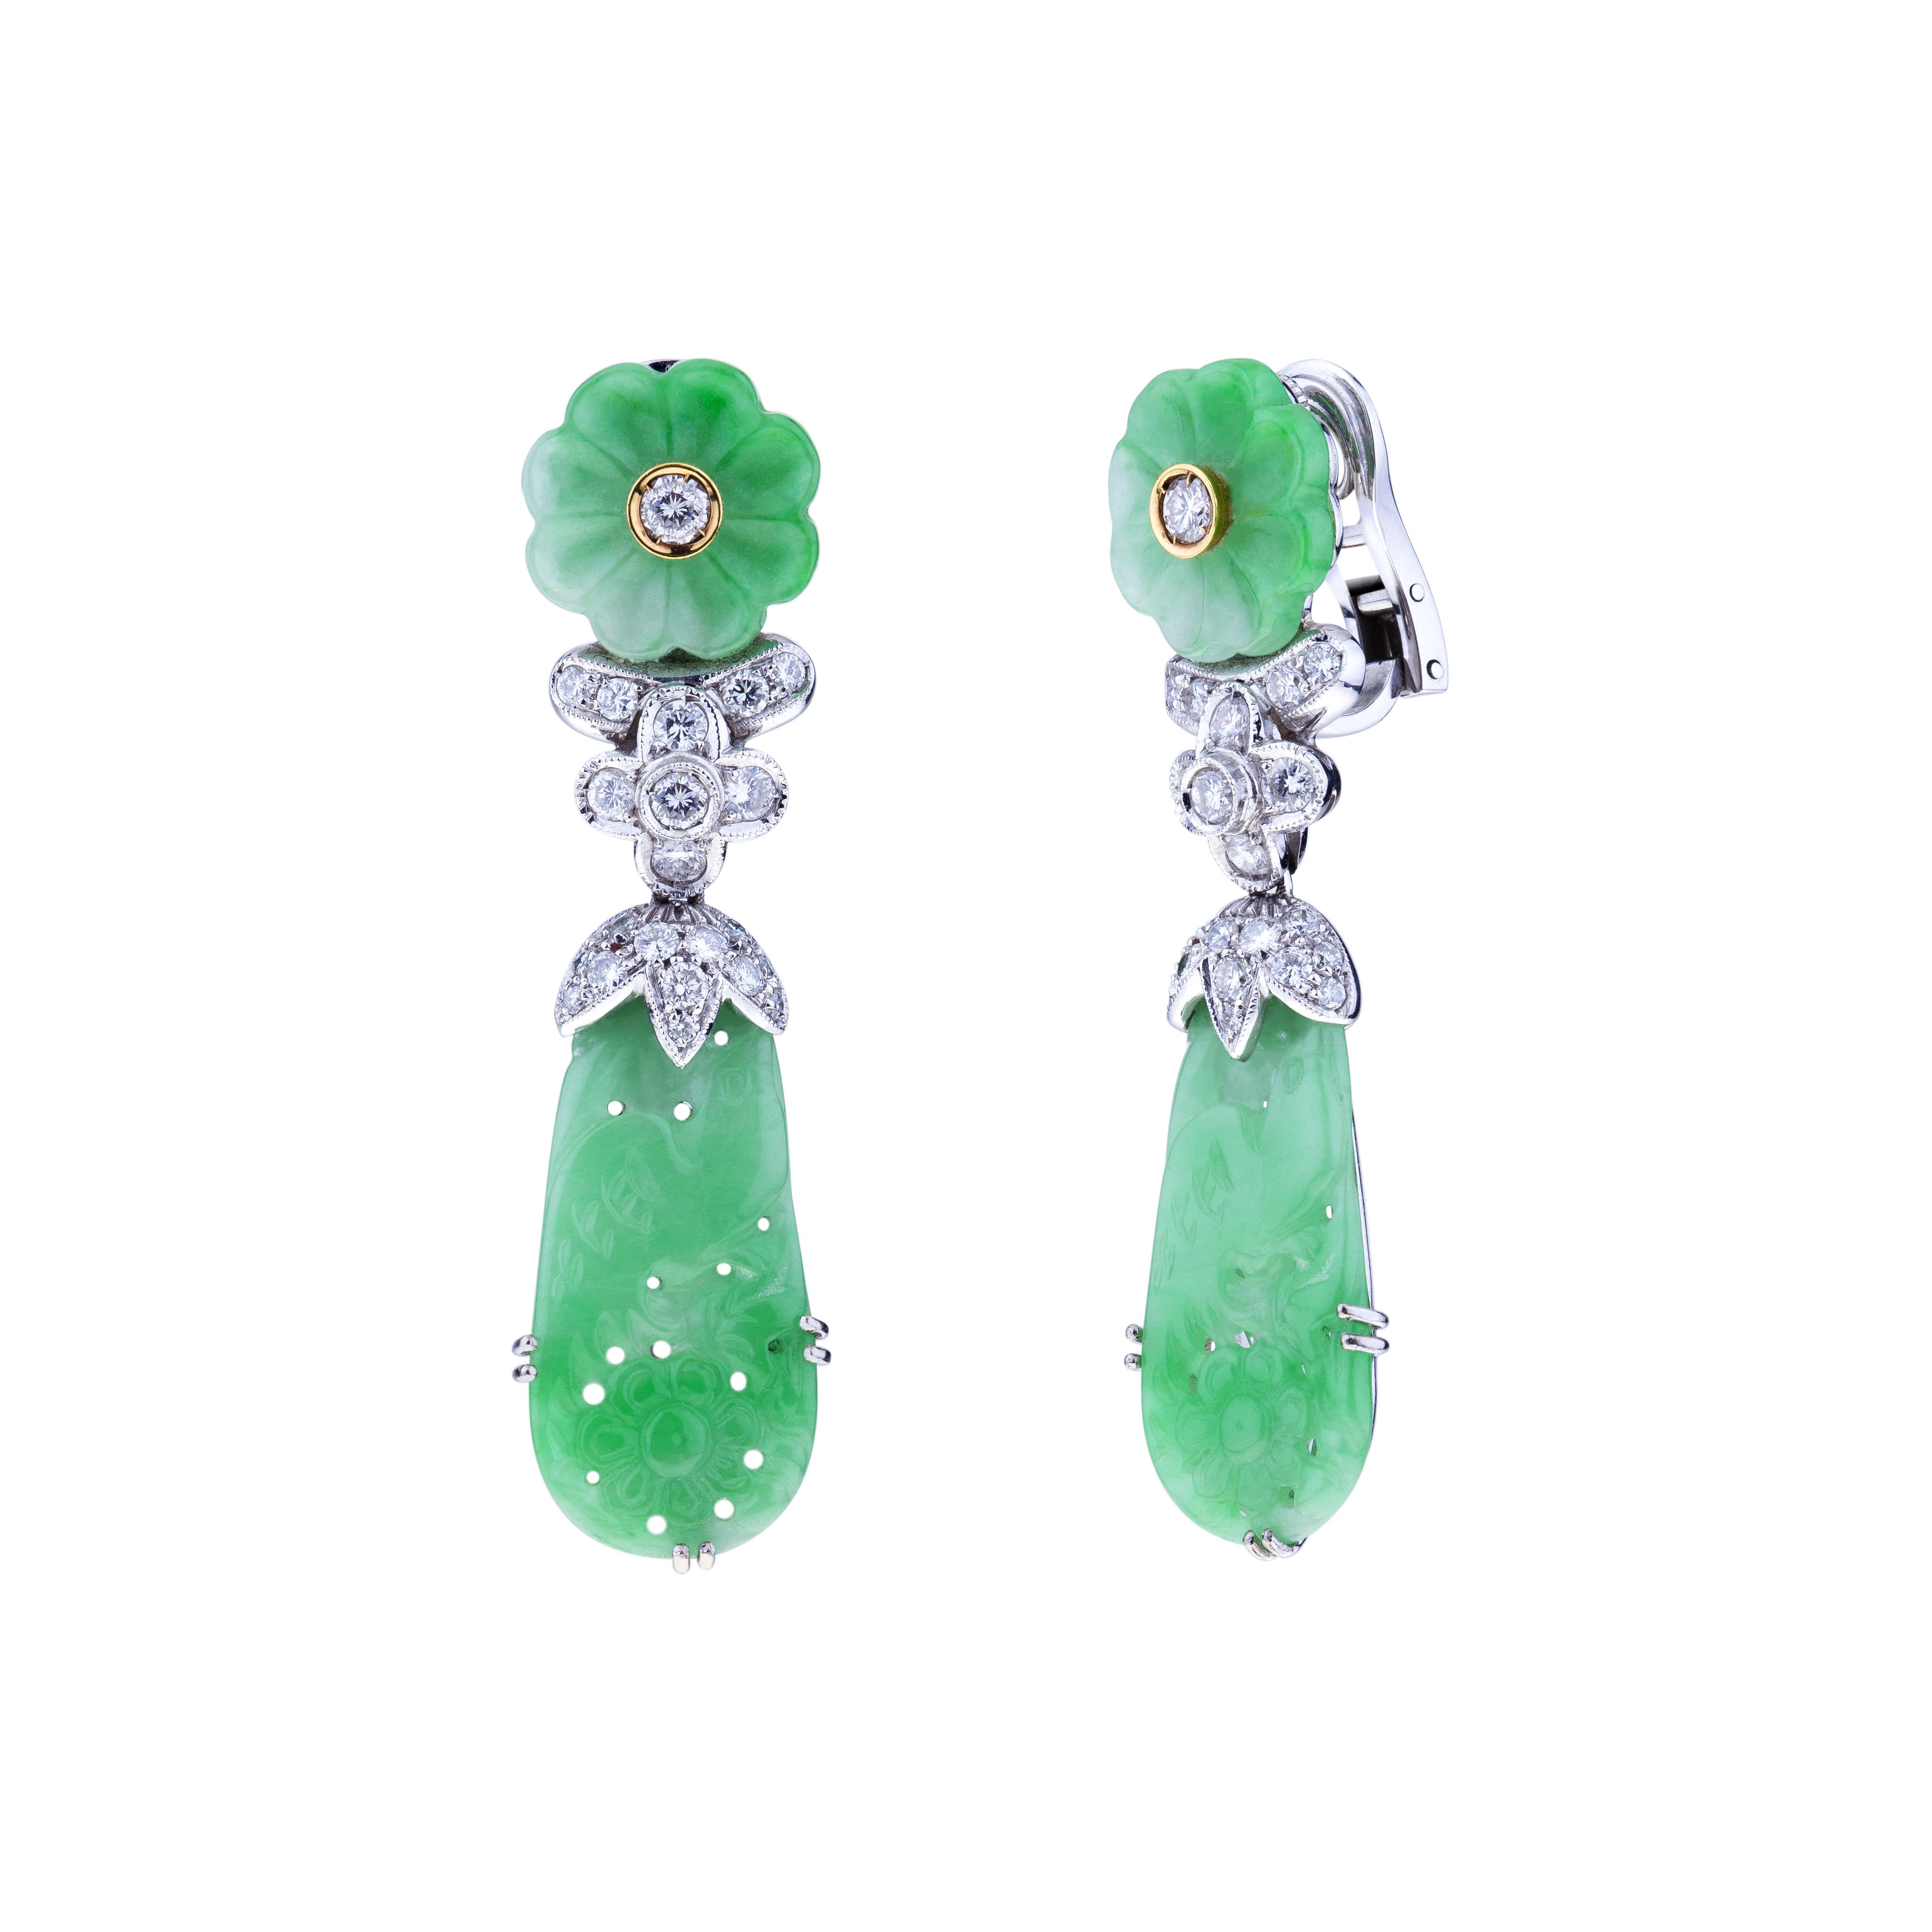 Boucles d'oreilles en jade translucide sculpté à la main de haute qualité avec des diamants.
La magie du jade de ces boucles d'oreilles vient du fait qu'il est translucide tout en étant l'un des matériaux les plus durs présents dans la Nature. On